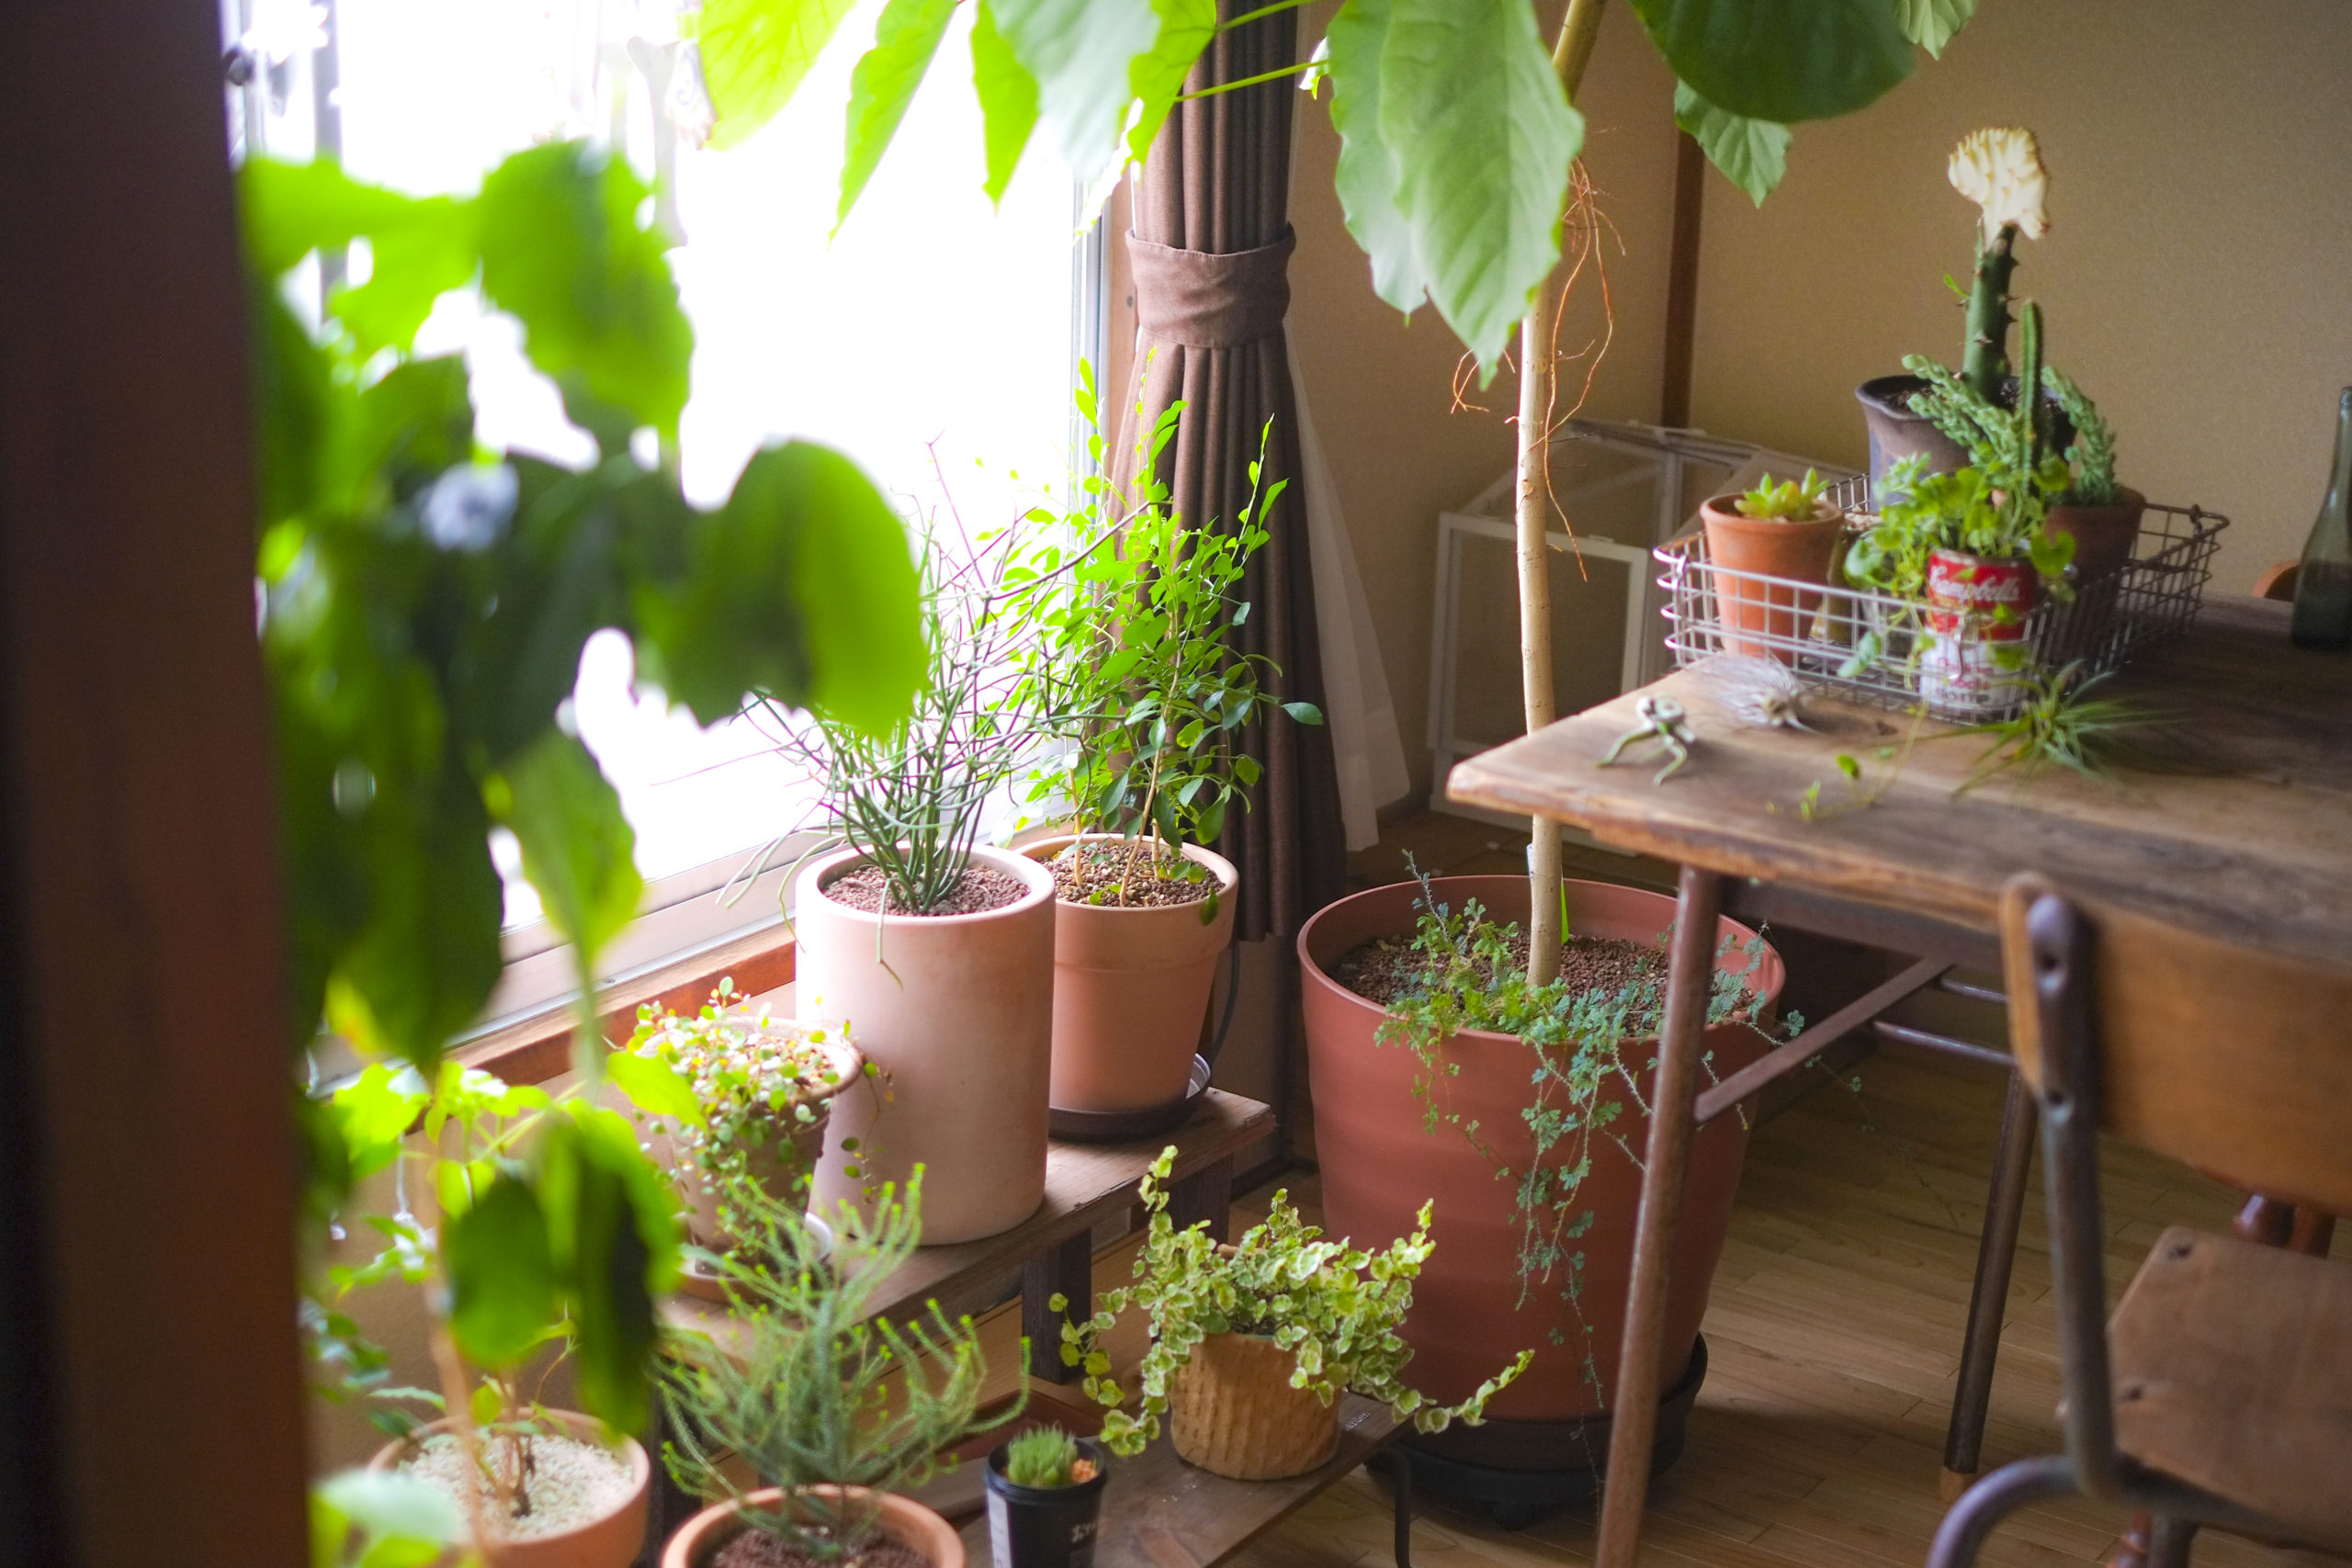 日清ガーデンメイト公式ホームページ | 日清ガーデンメイトのホームページです。当社商品である家庭園芸用の肥料や用土の情報をお届けします。